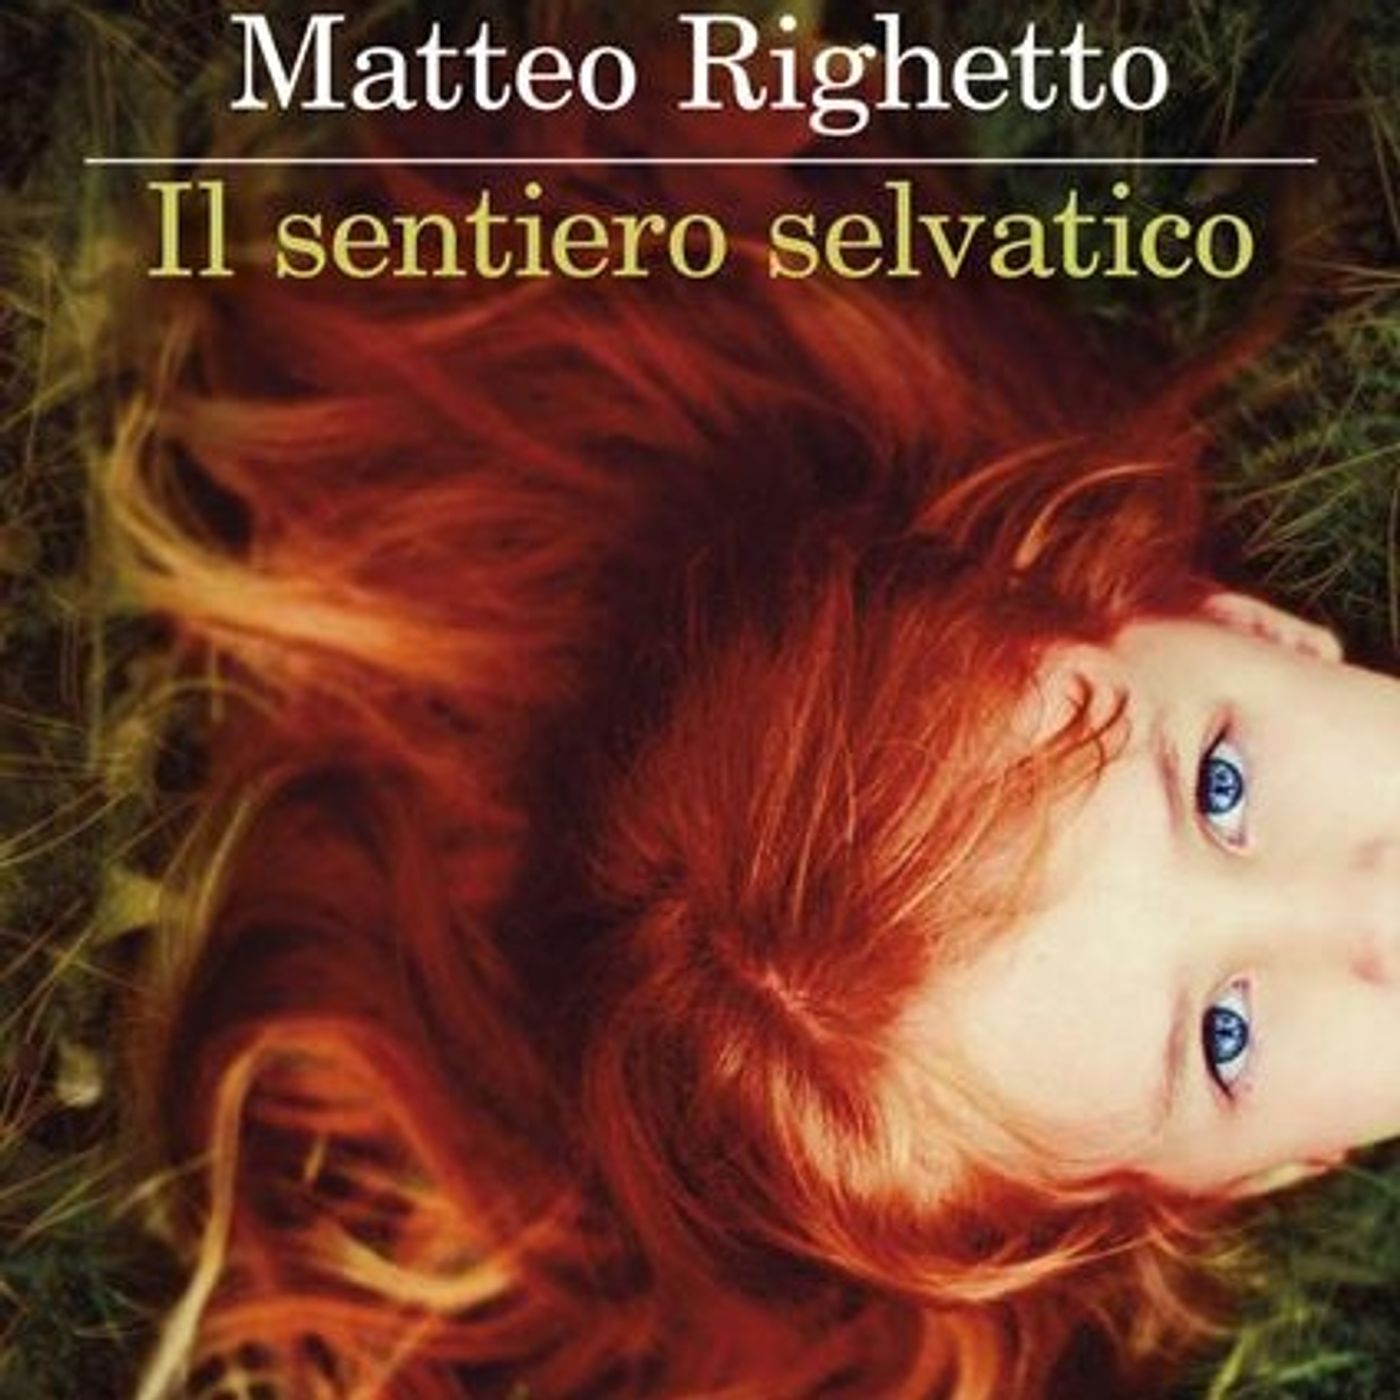 Matteo Righetto "Il sentiero selvatico"